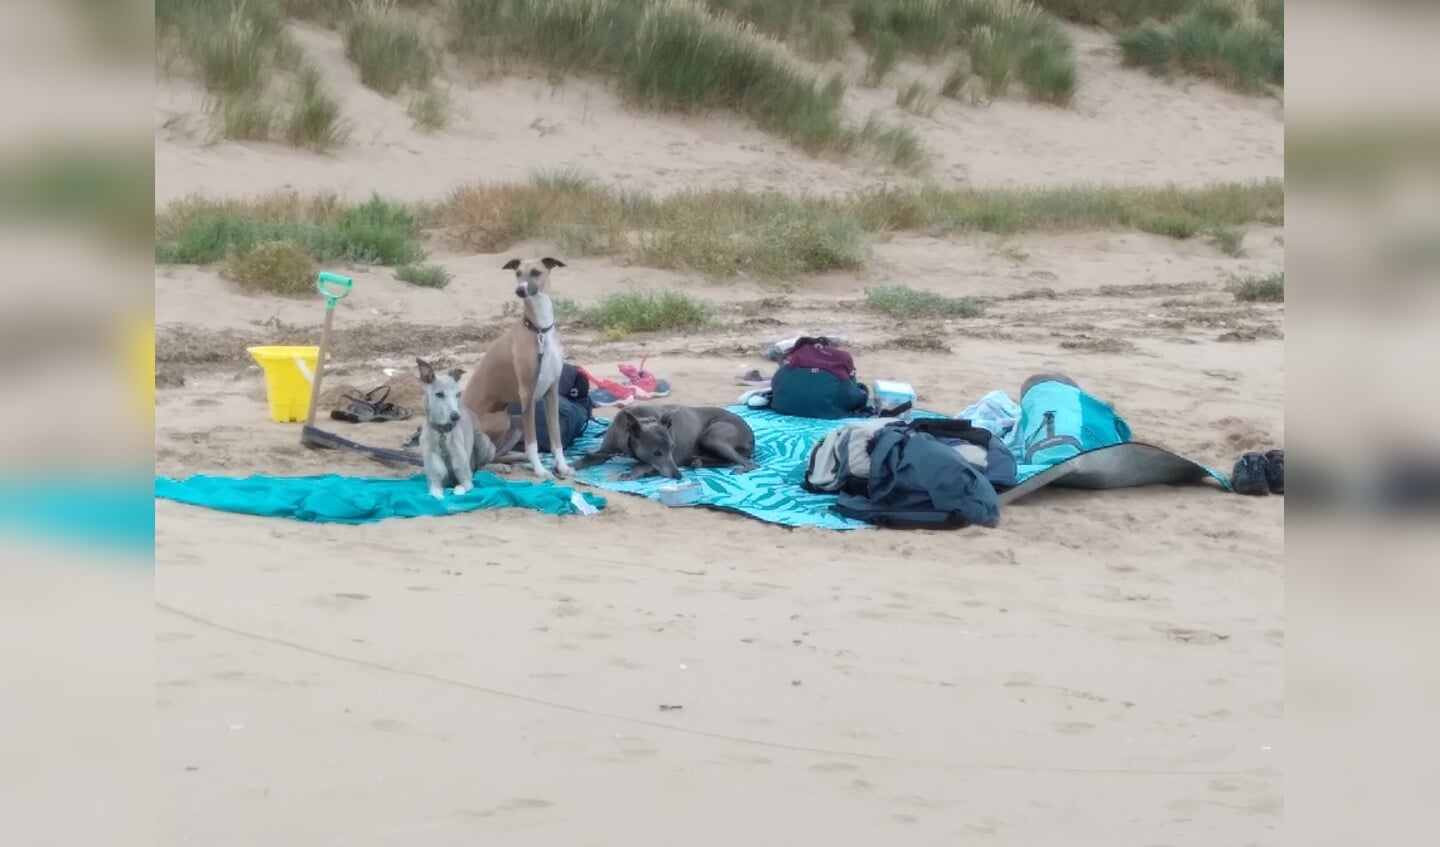 'Deze foto maakte ik in Norfolk, Engeland, waar werkelijk ontzettend veel mensen rondlopen met een hond. Op het strand was een gezin aan het zwemmen en ze lieten de honden achter als 'baywatch'.' 